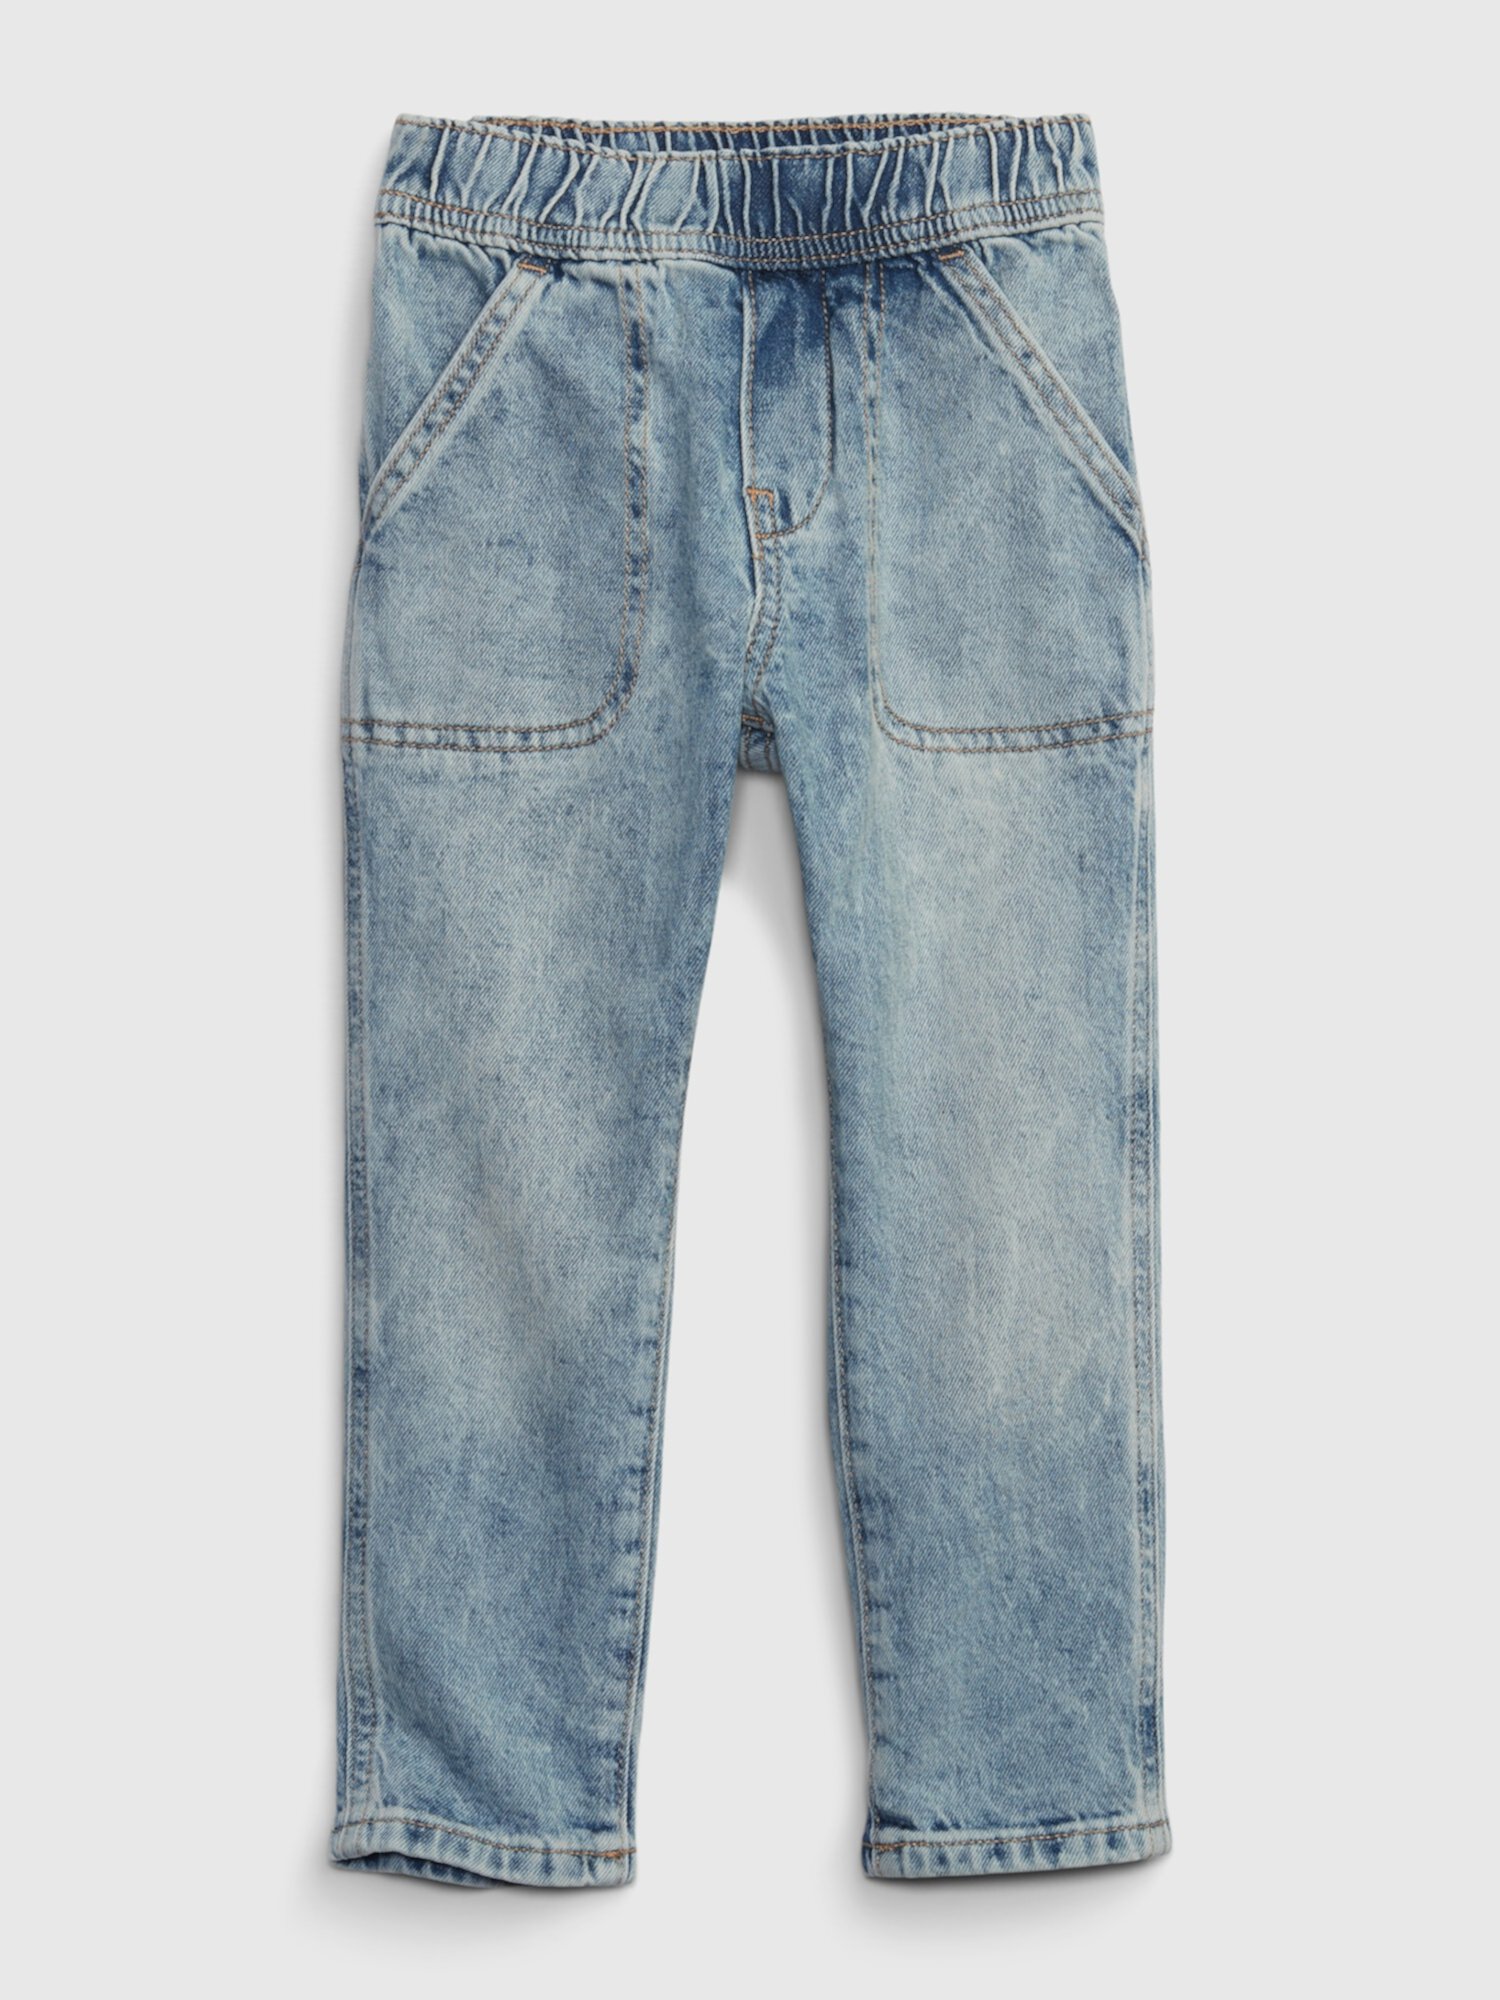 Легкие зауженные джинсы для малышей без застежек с тканью Washwell Gap